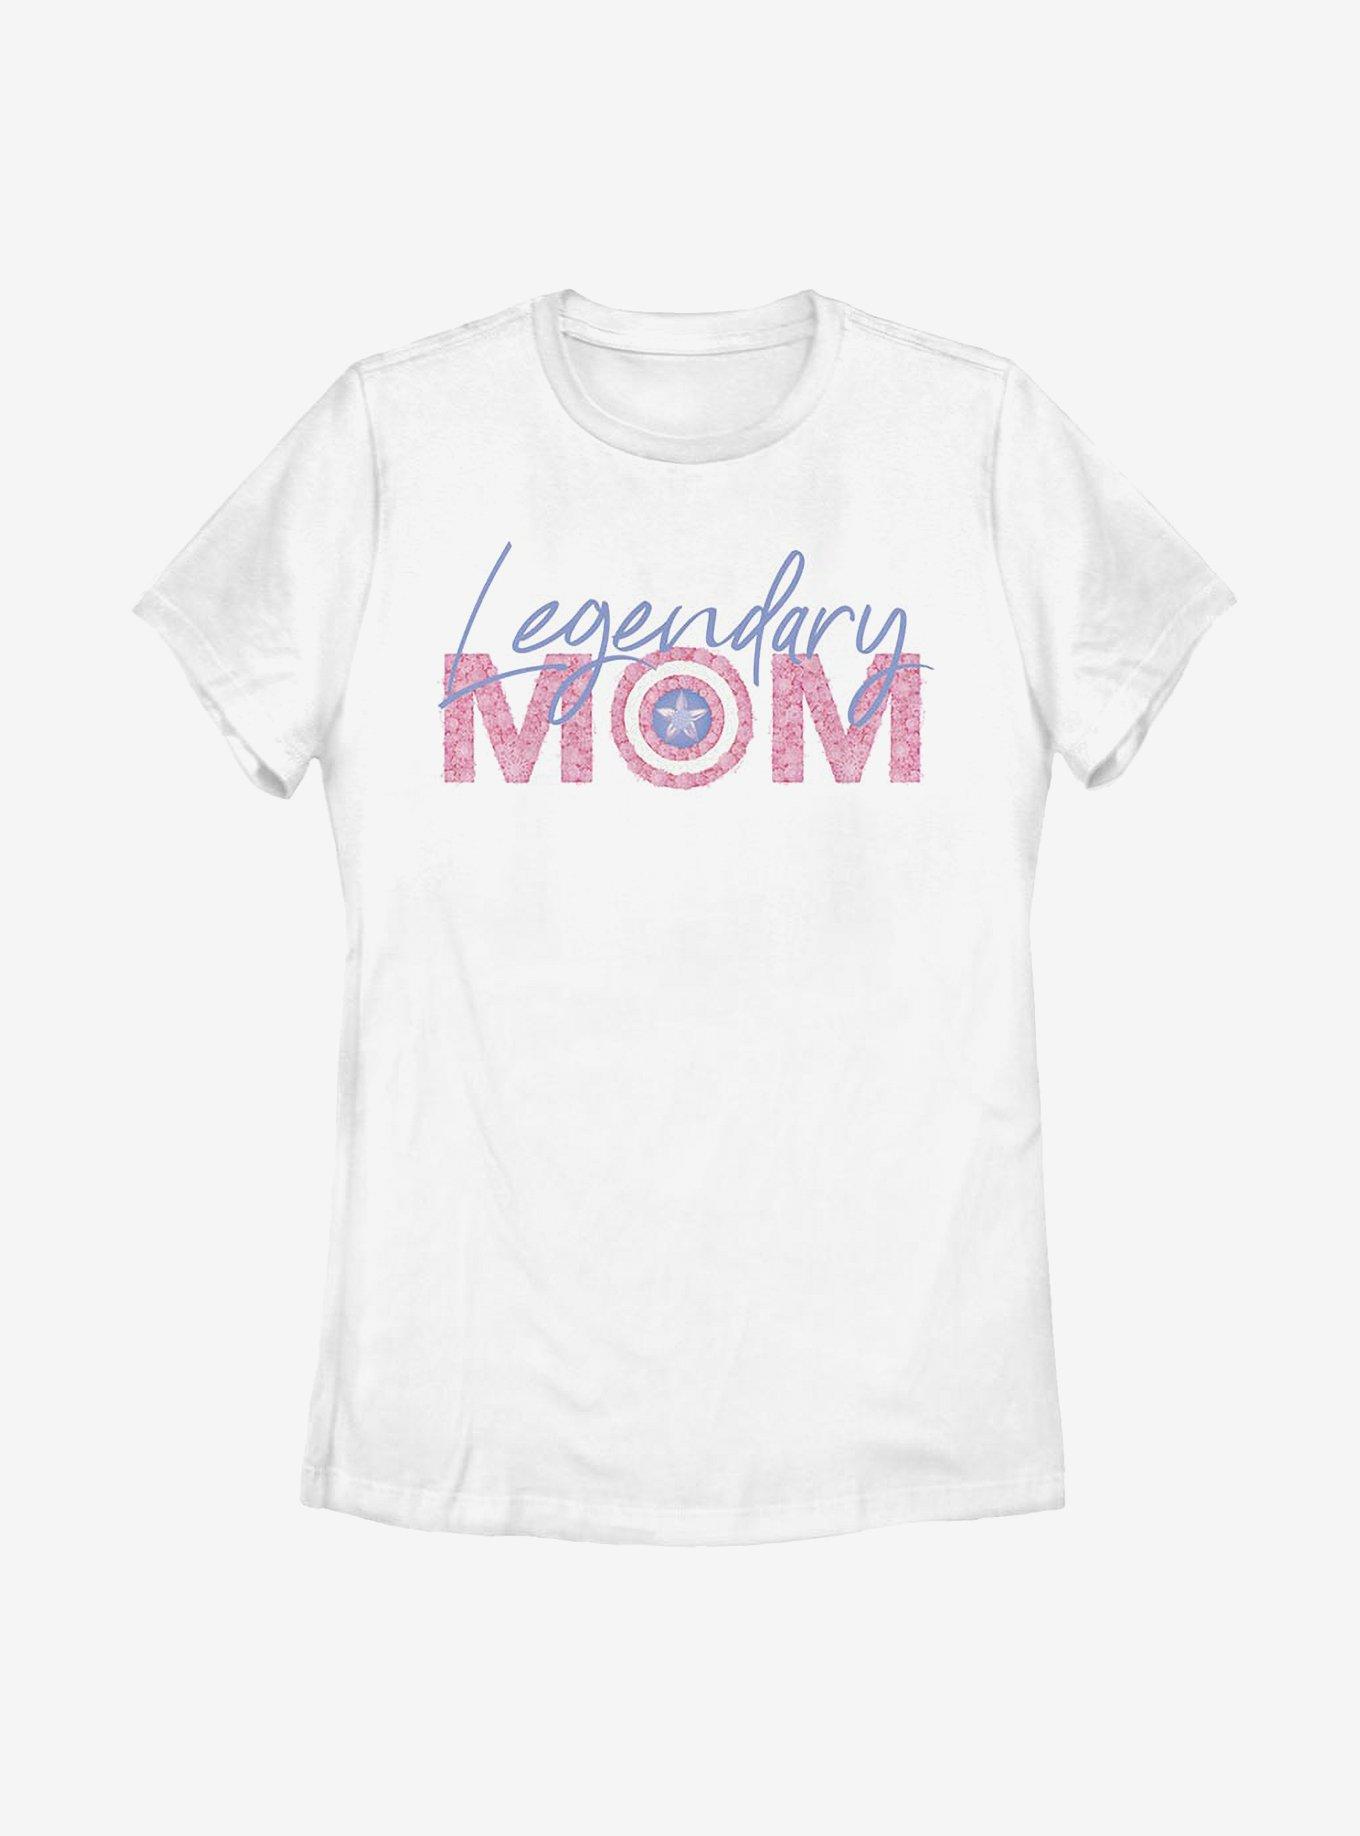 Marvel Captain America Legendary Mom Flowers Womens T-Shirt, WHITE, hi-res